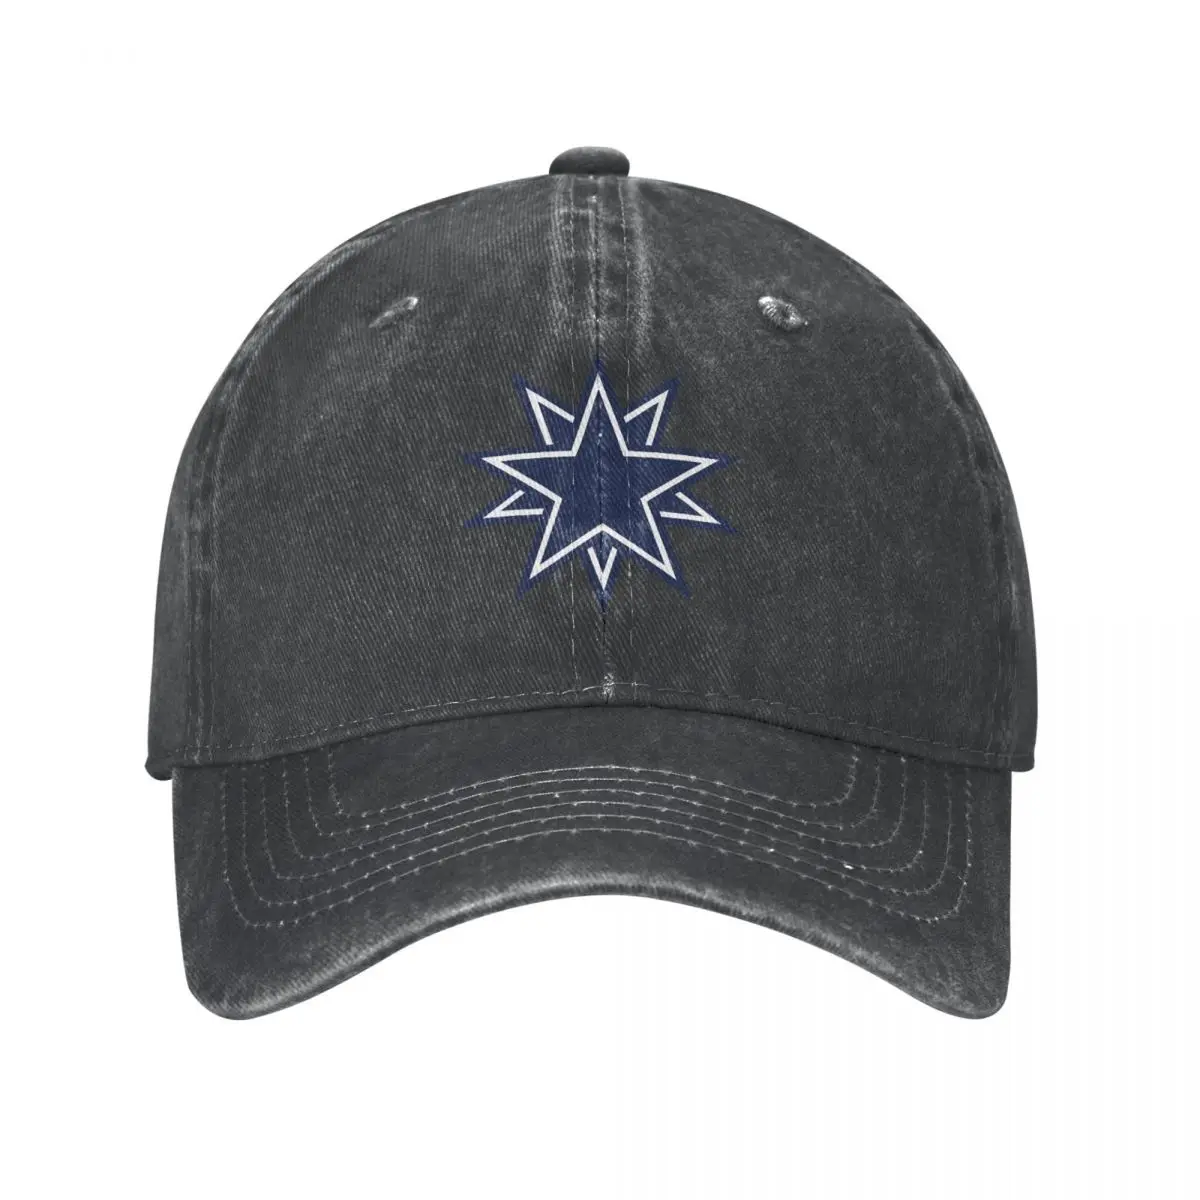 

Dallas Cowboy Star Baseball Cap cowboy hat Peaked cap Cowboy Bebop Hats Men and women hats